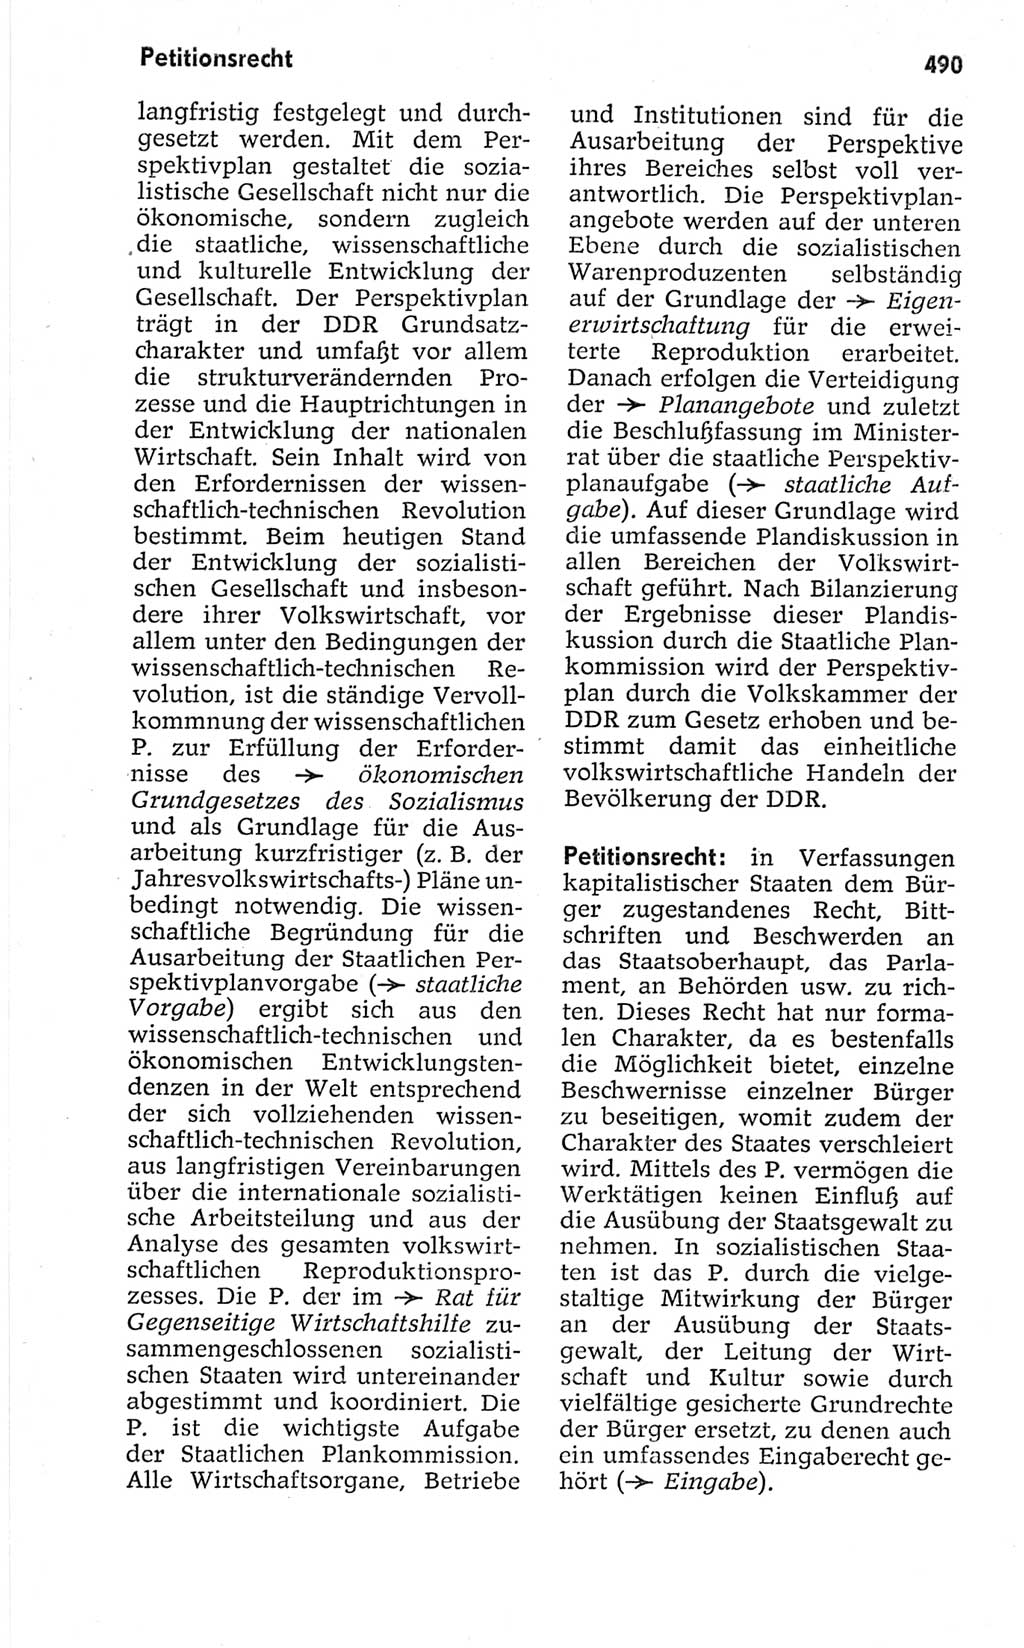 Kleines politisches Wörterbuch [Deutsche Demokratische Republik (DDR)] 1967, Seite 490 (Kl. pol. Wb. DDR 1967, S. 490)